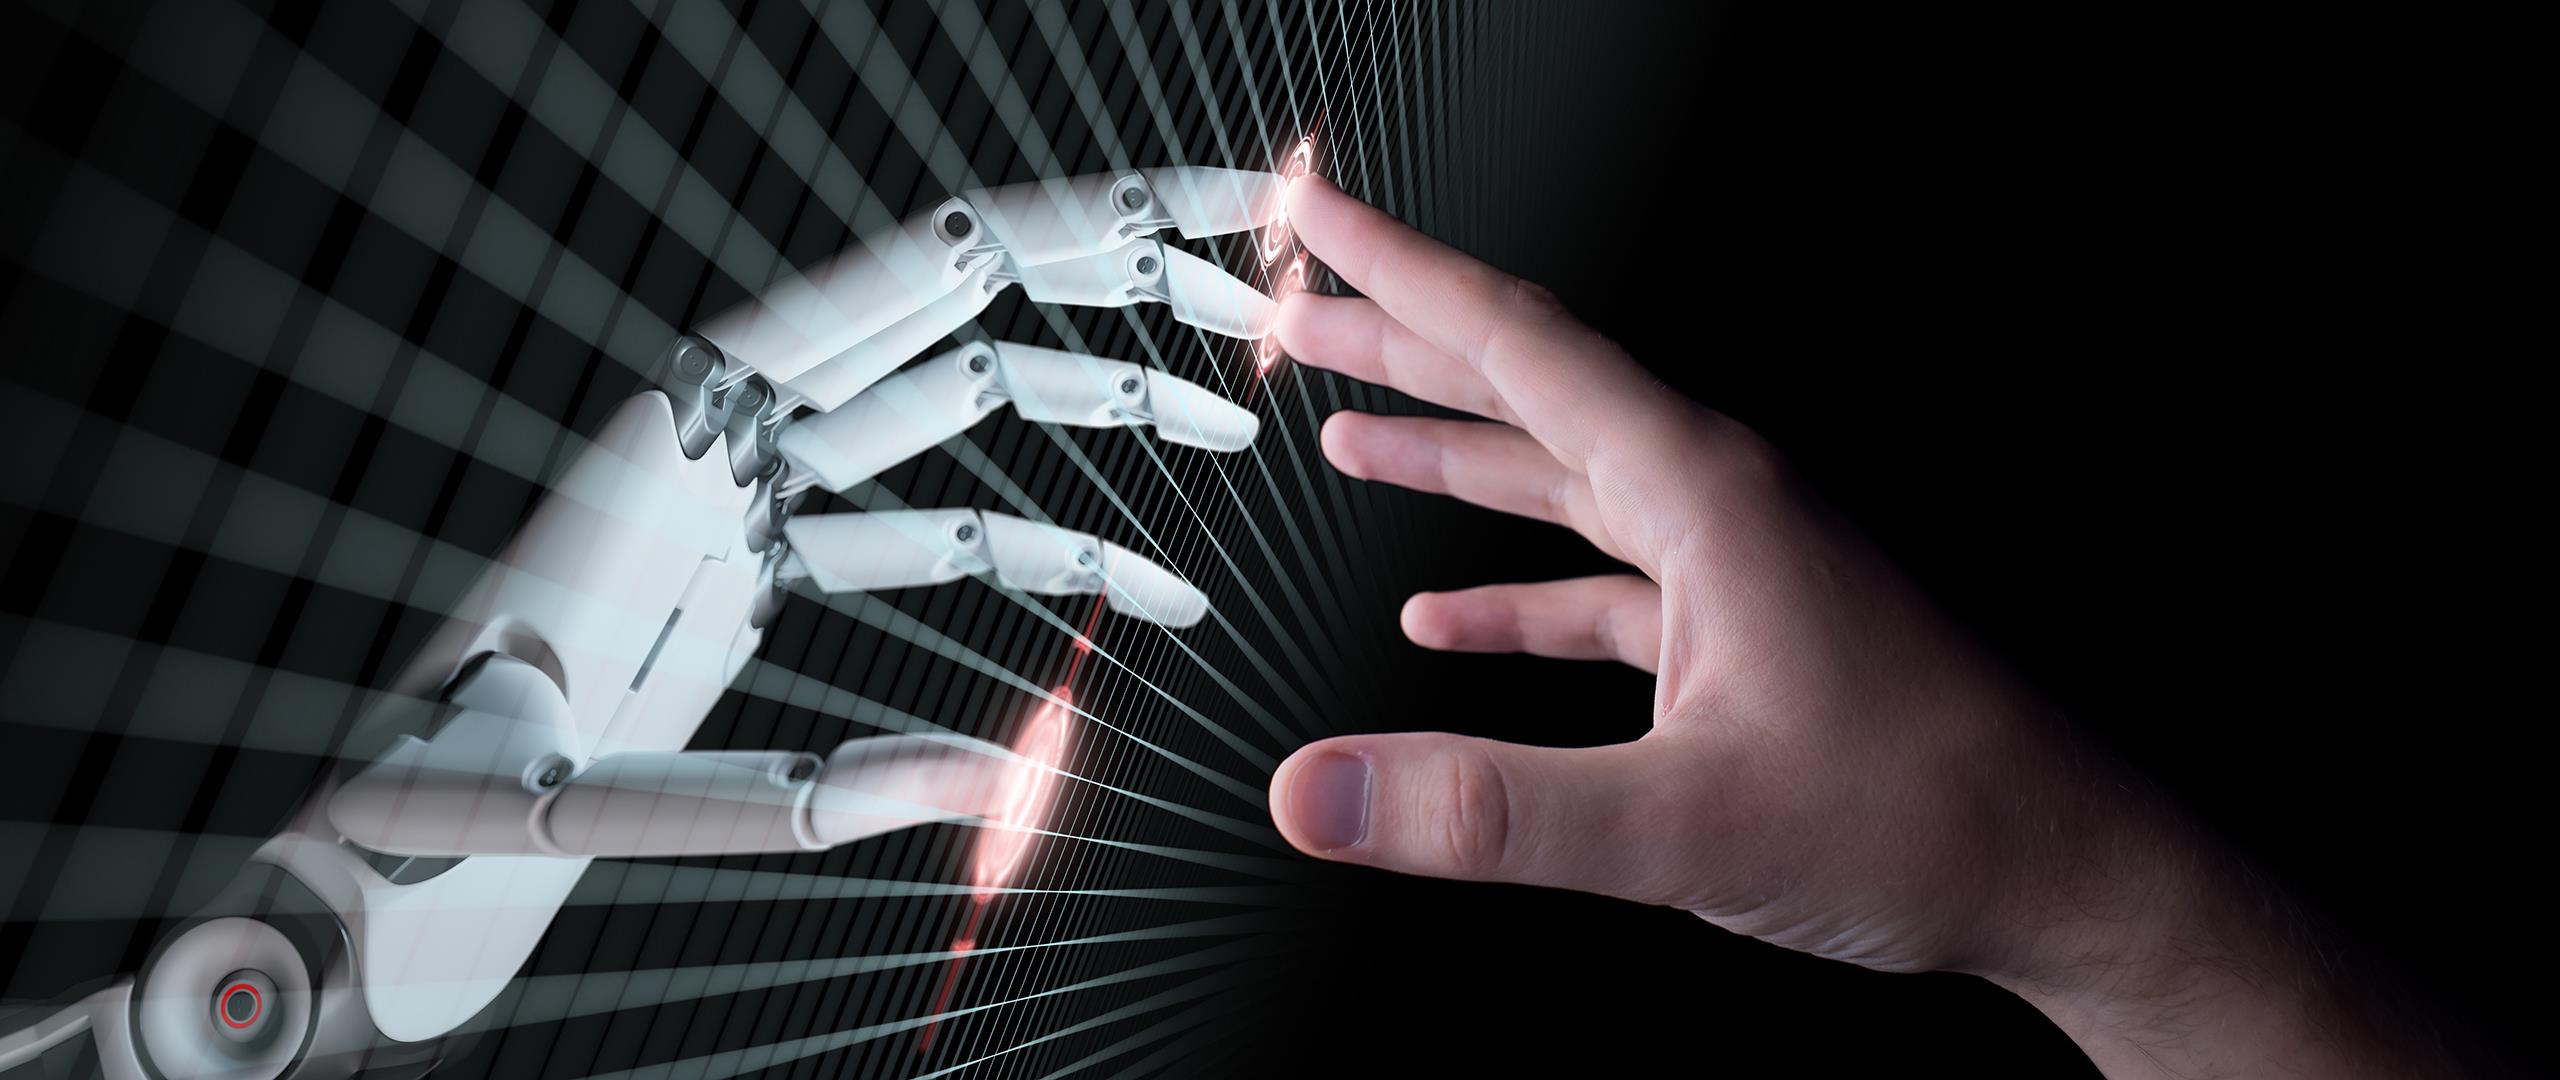 Kontakt mellom robothand og menneskehand (illustrasjon)